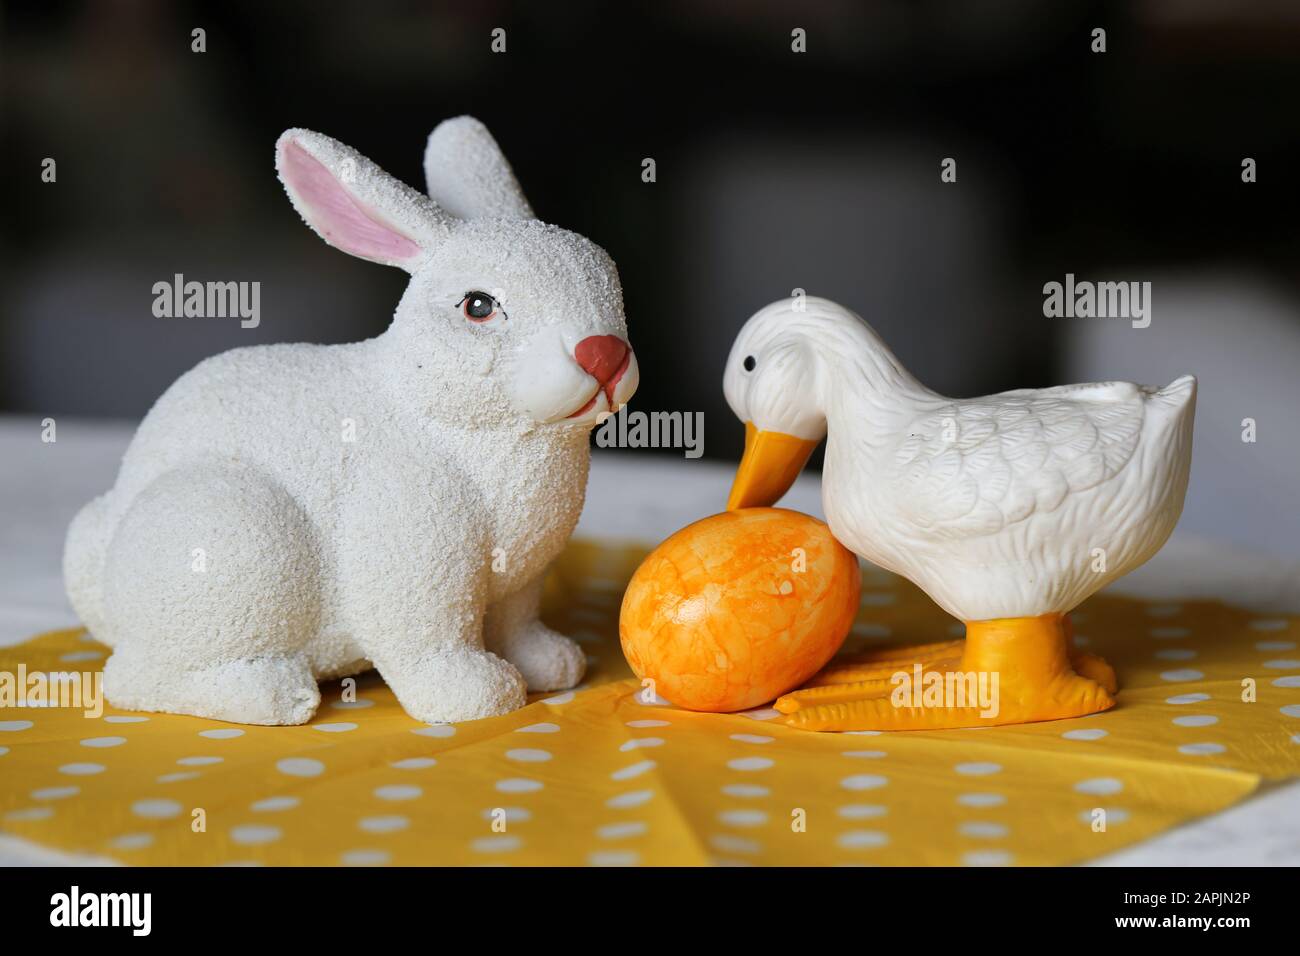 Colorate decorazioni pasquali su un tavolo. Immagine a colori closeup di una ceramica bianca coniglietto di Pasqua e anatra figure e colorate uova di Pasqua dipinte. Foto Stock